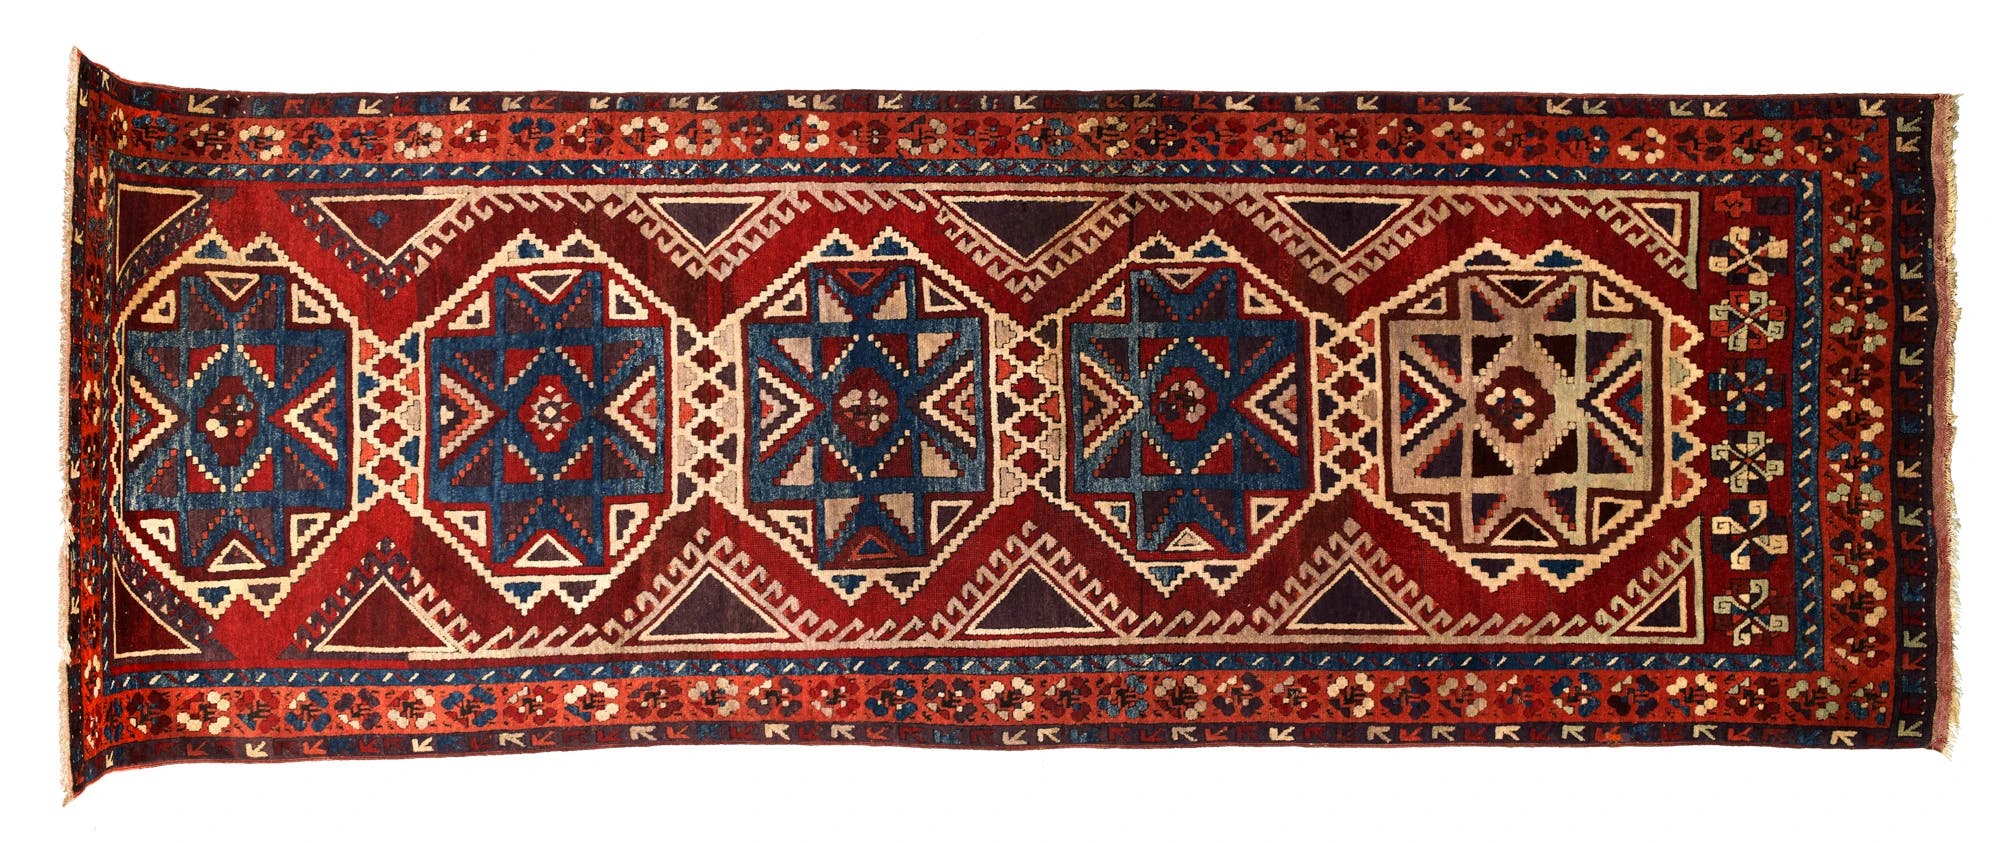 Karapinar Teppich aus Konya, 338x114 cm, antik um 1800 (Einzelansicht Querformat)